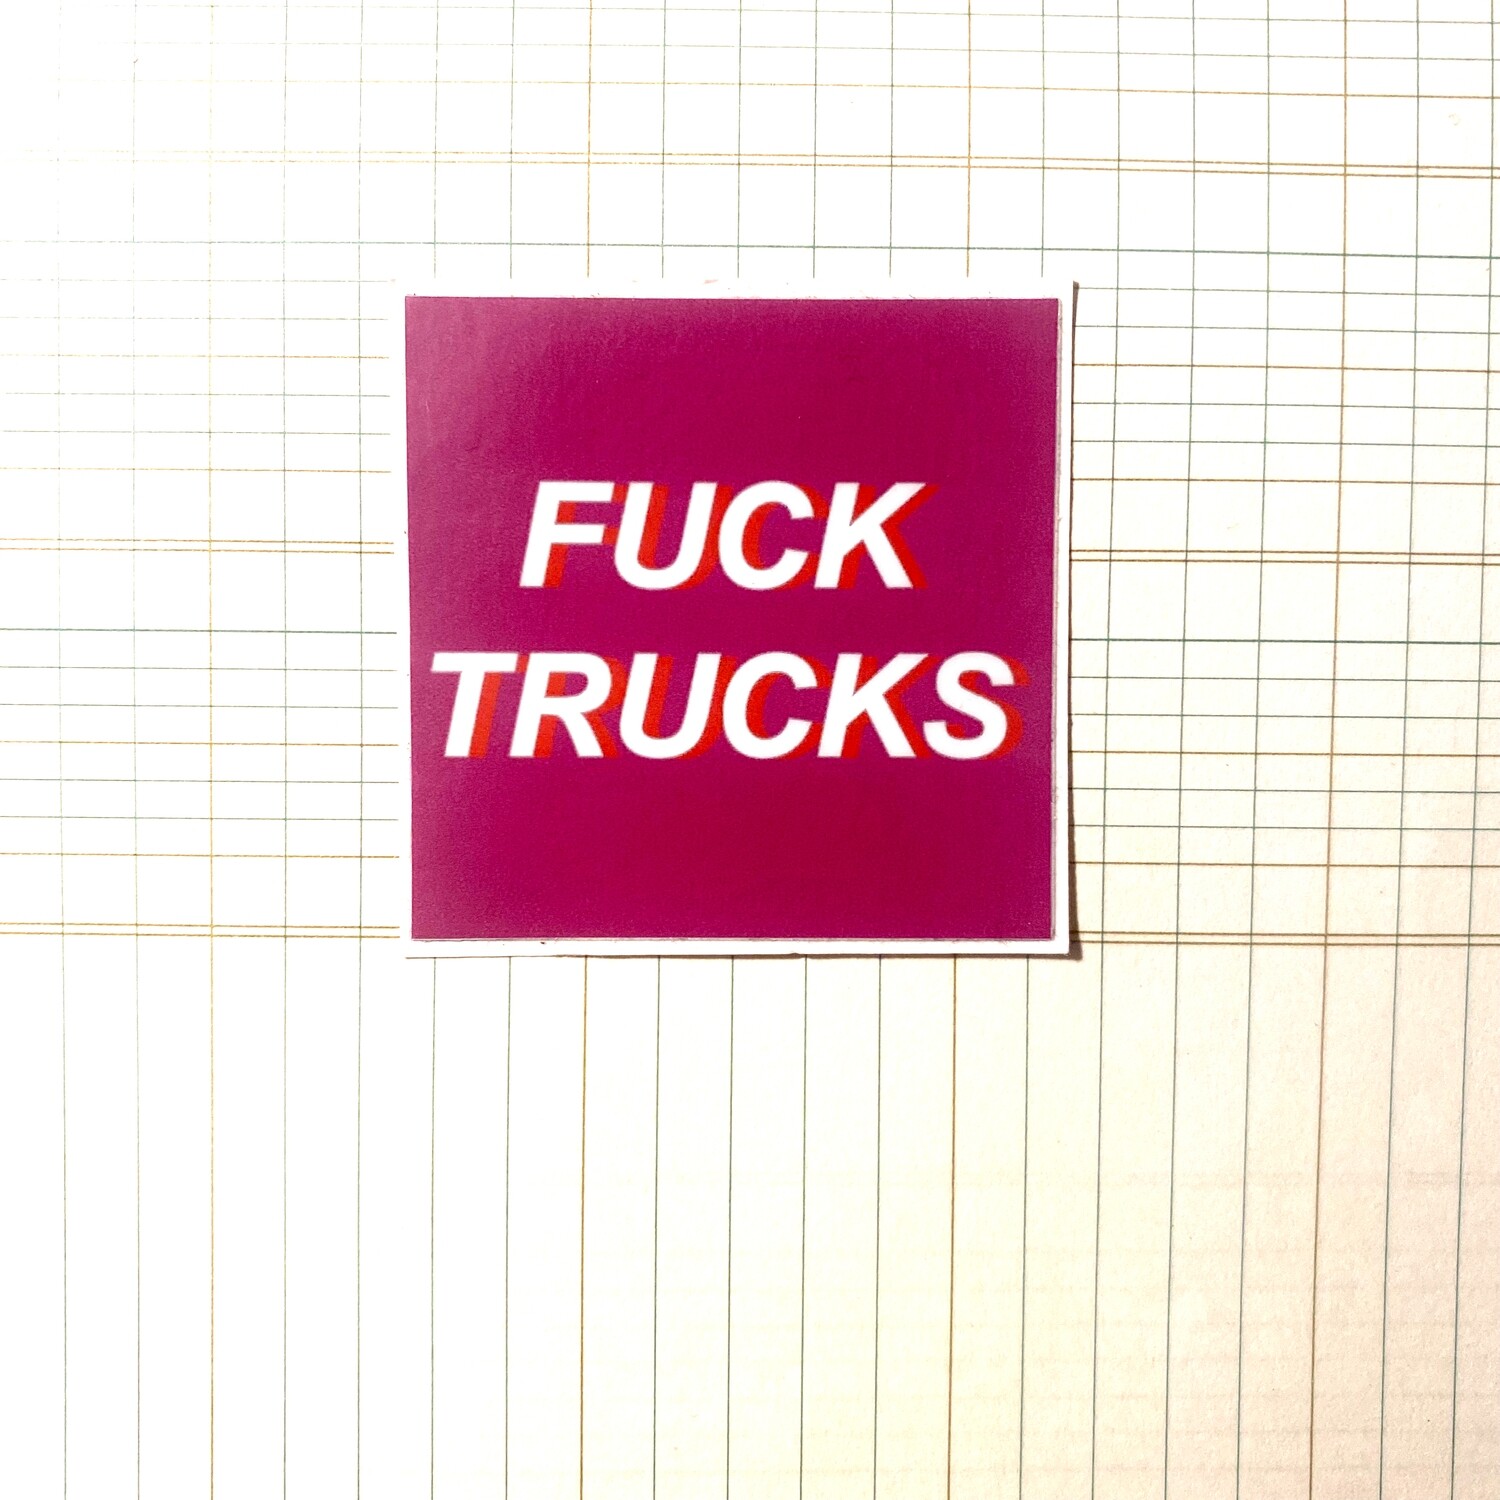 FUCK TRUCKS - Sticker by Kelly Sheetz